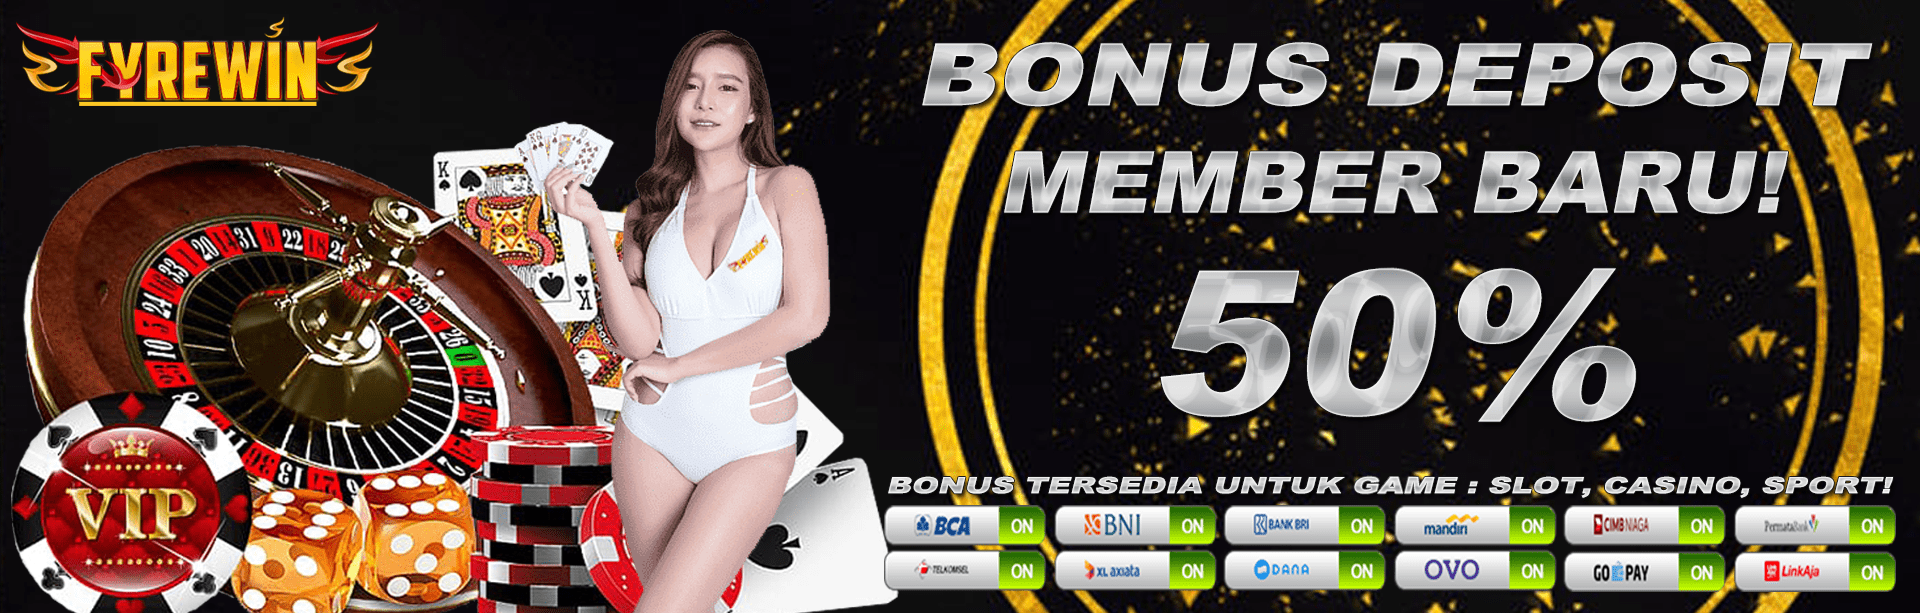 Bonus member baru 50%